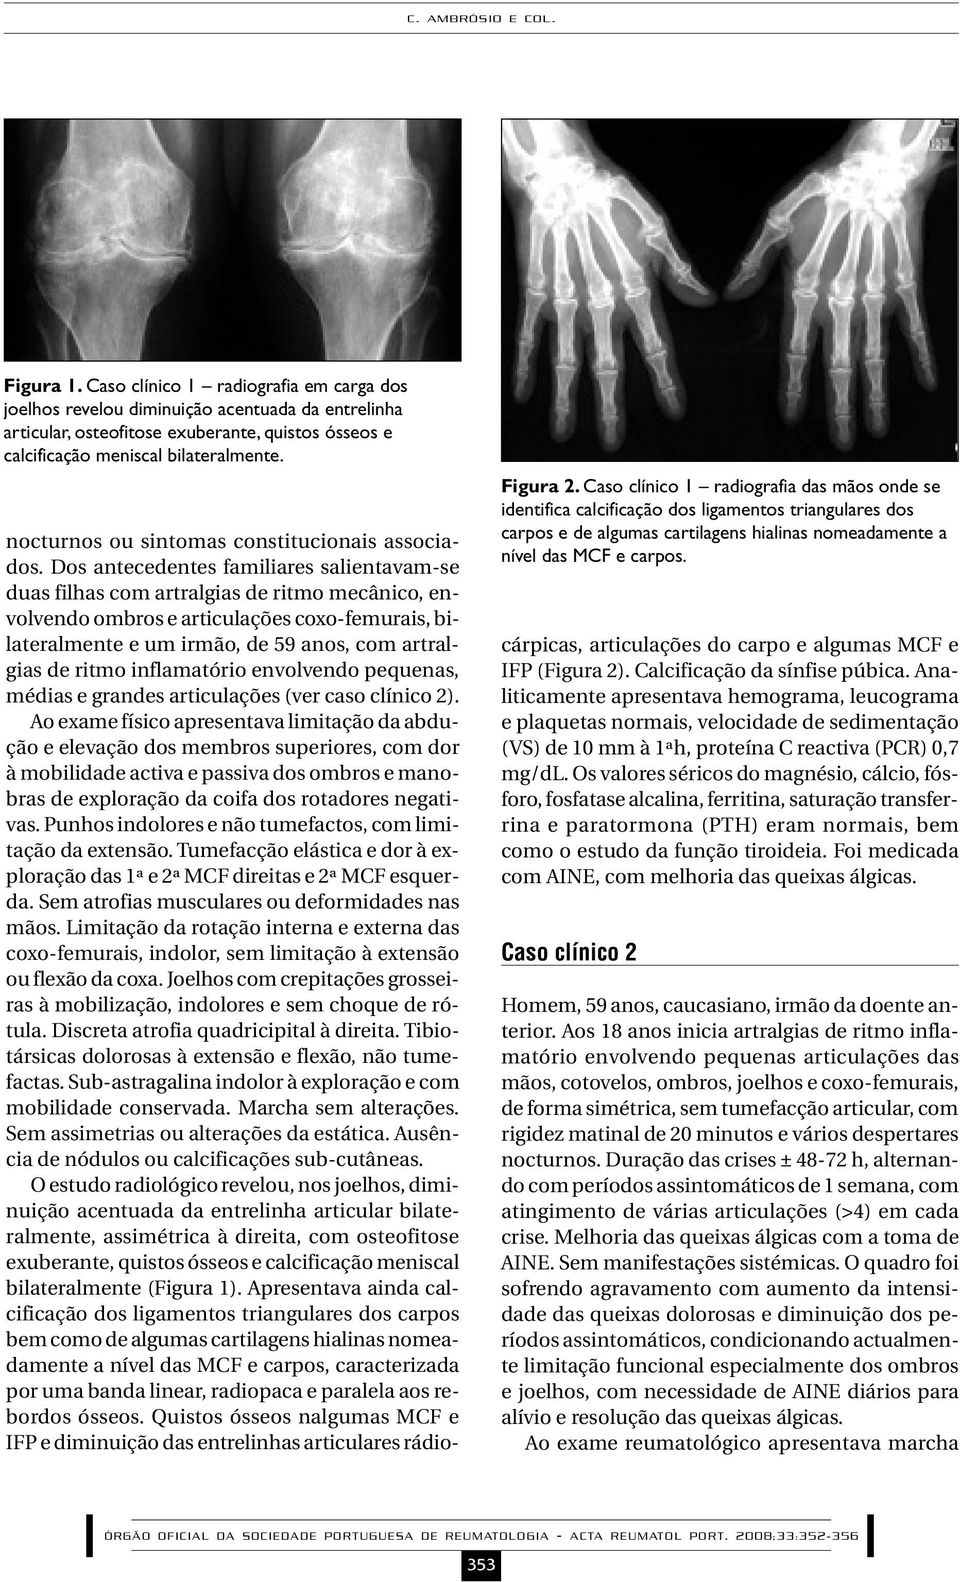 Caso clínico 1 radiografia das mãos onde se identifica calcificação dos ligamentos triangulares dos carpos e de algumas cartilagens hialinas nomeadamente a nível das MCF e carpos.